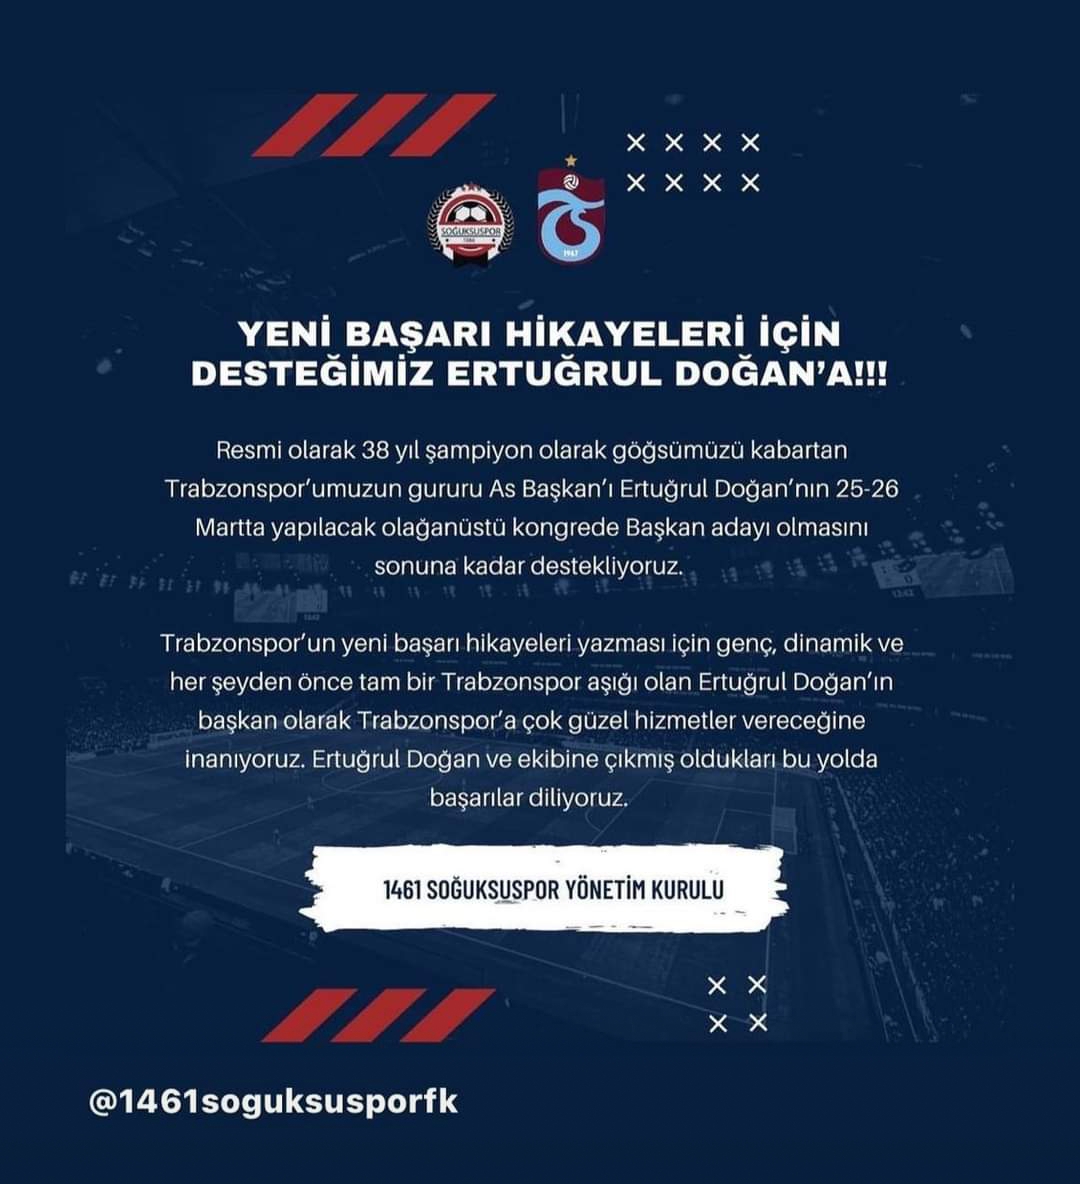 Trabzonspor başkanlığı için kararlarını resmen açıkladılar! Ertuğrul Doğan’a desteklerini resmen açıkladılar